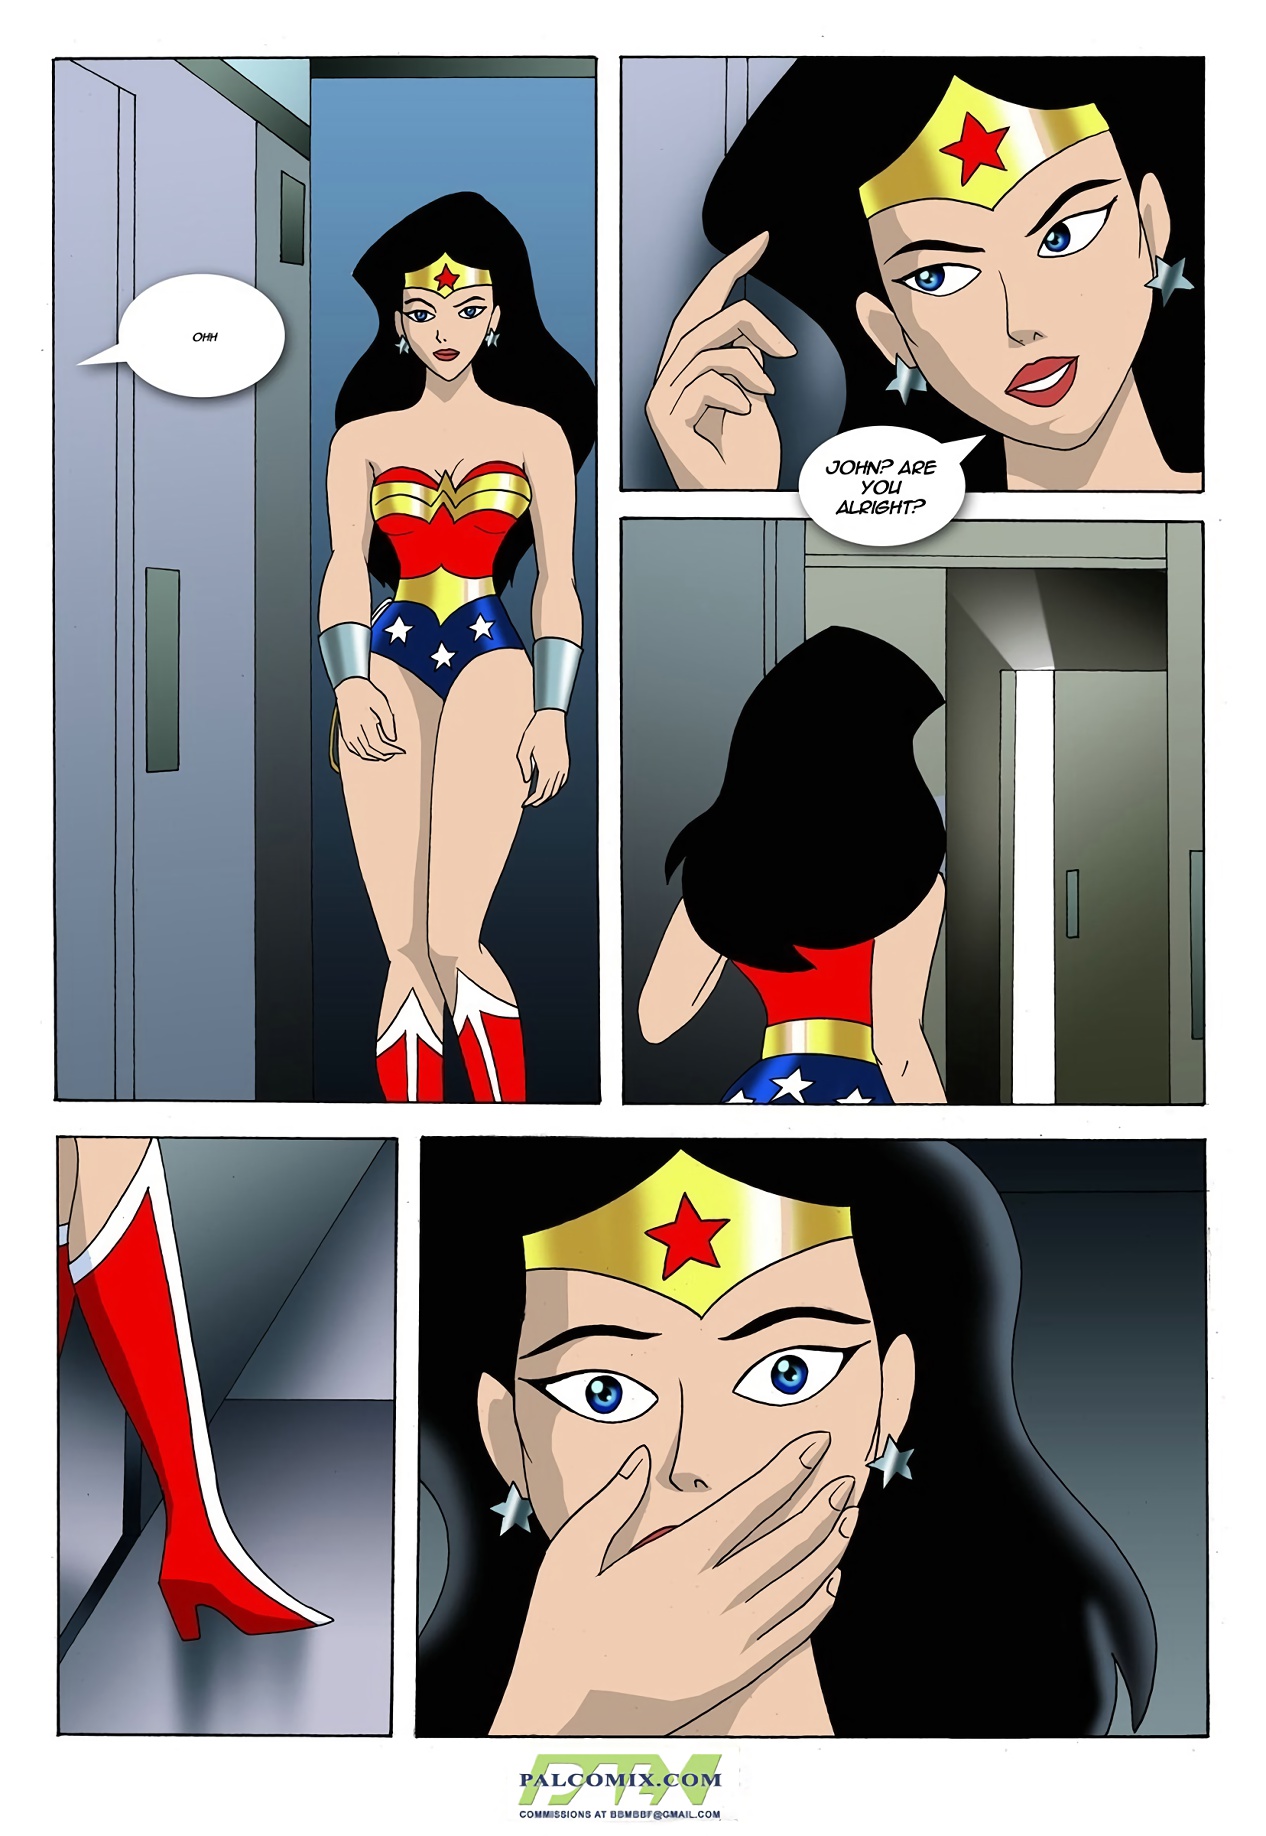 League justice porn wonder comic woman